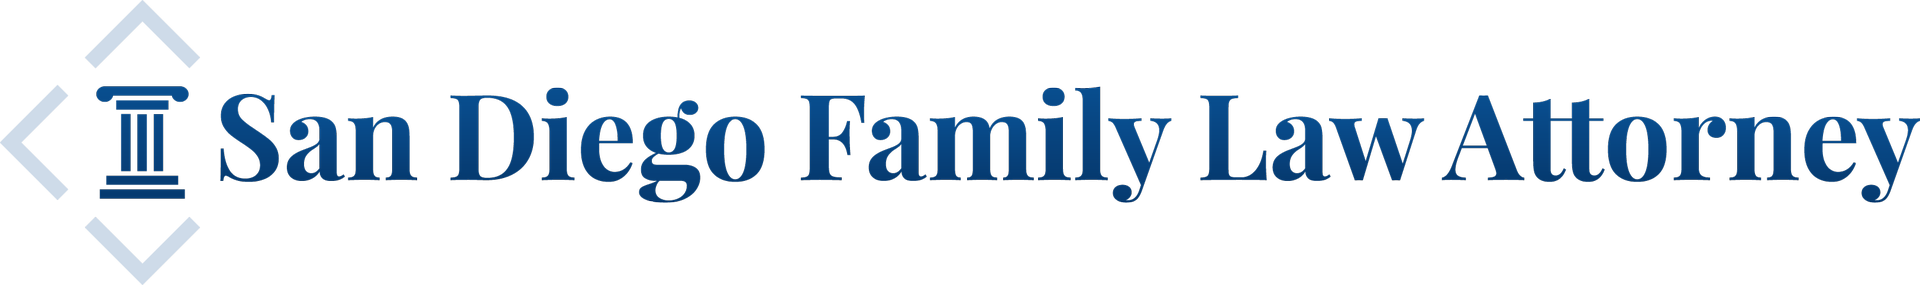 San Diego Family Law Attorney logo